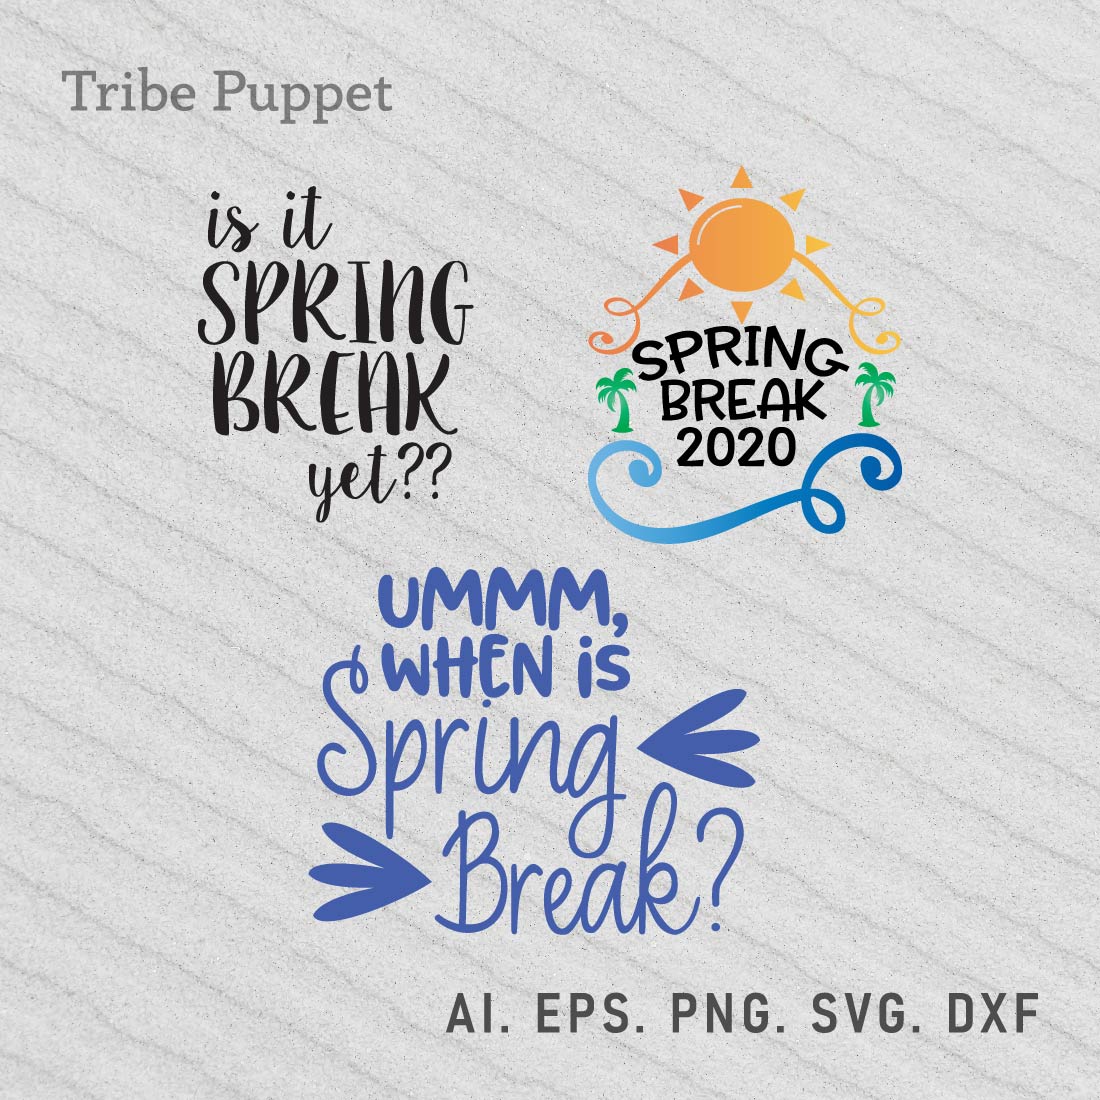 Spring Break Typo preview image.